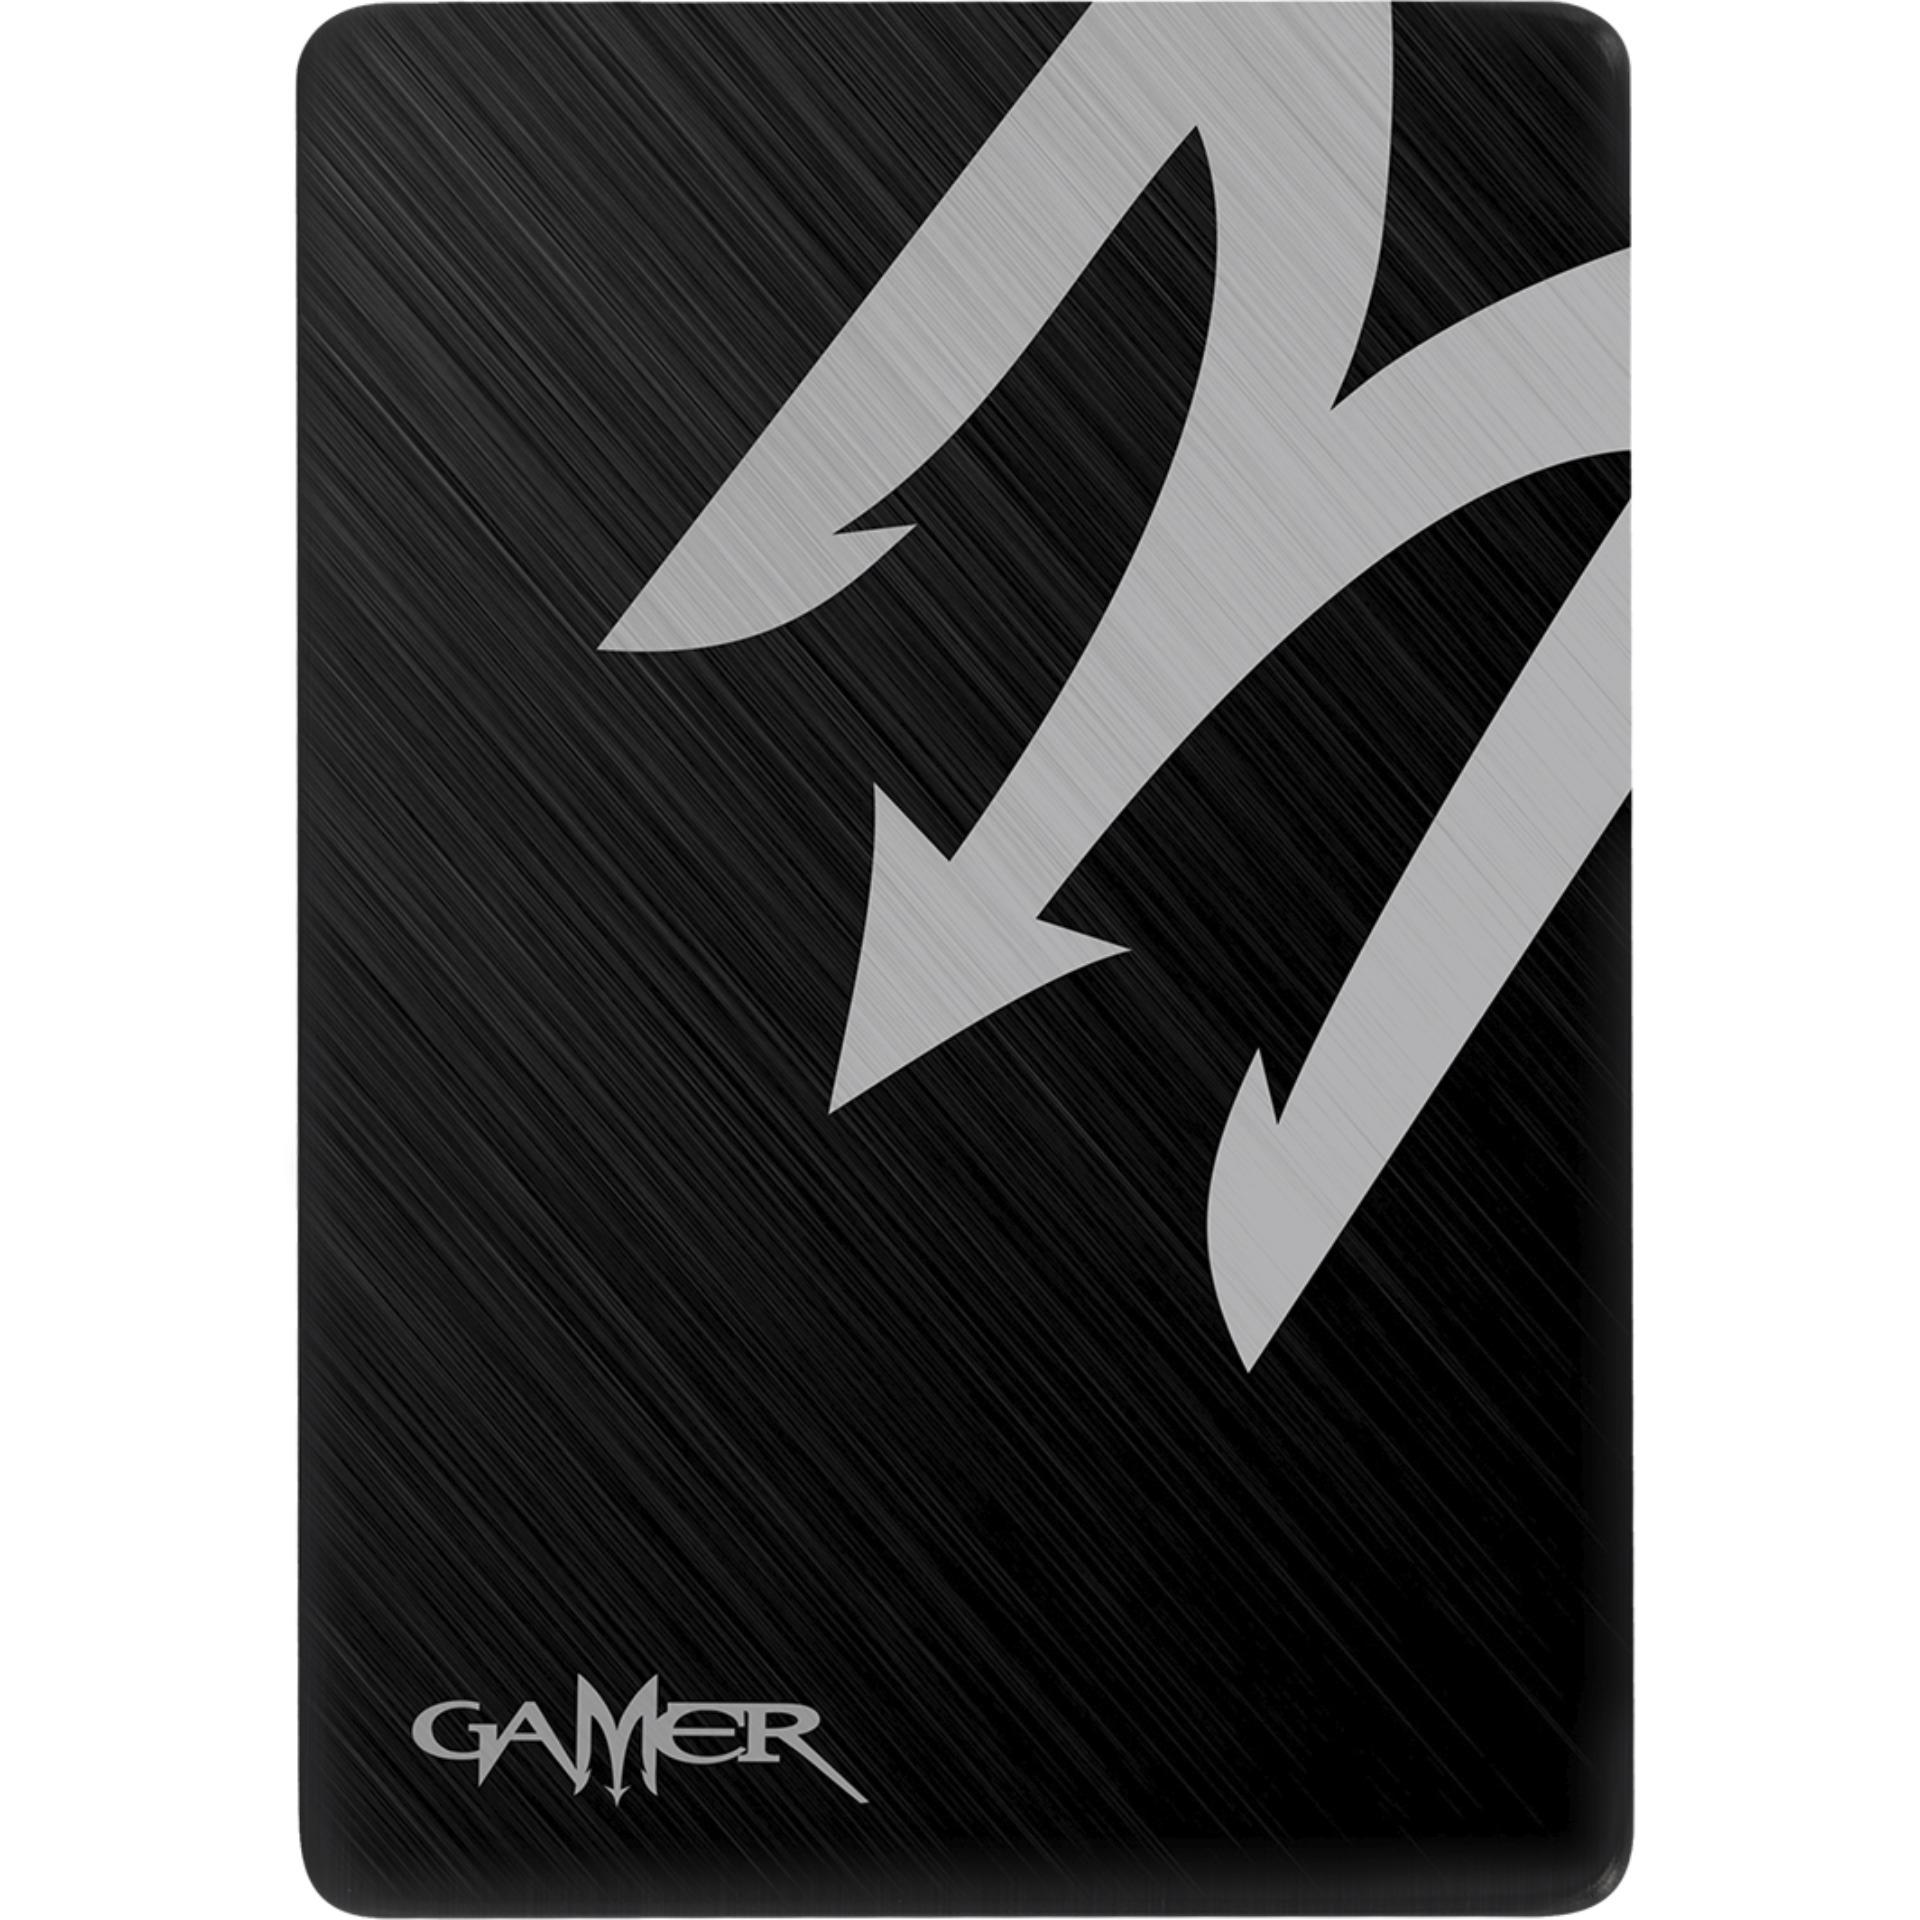 Ổ cứng SSD Galax Gamer L S11 120GB (Đen)